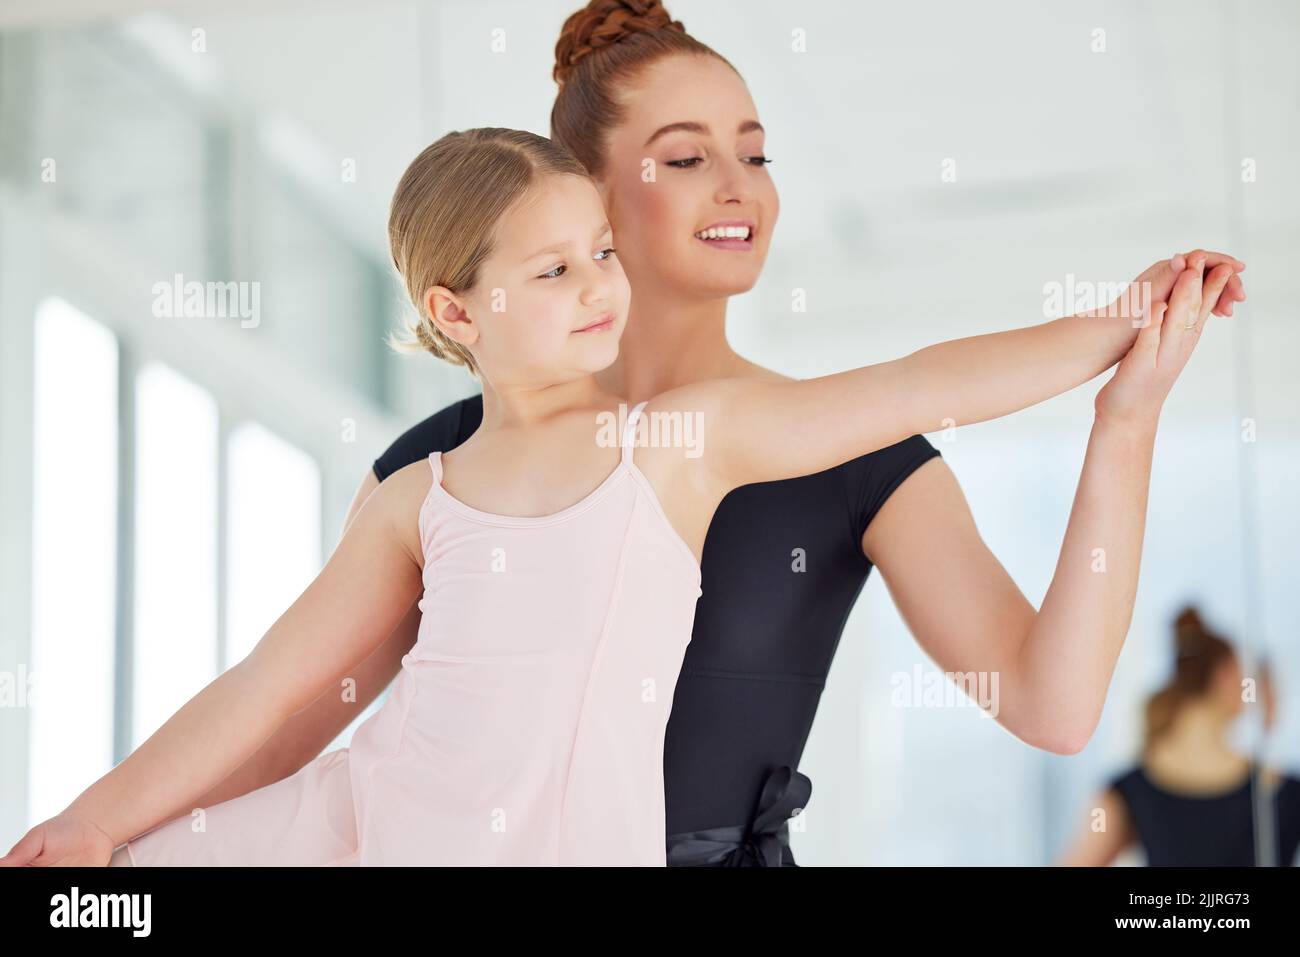 Balletttechnik ist willkürlich und sehr schwierig. Ein kleines Mädchen übt Ballett mit ihrer Lehrerin in einem Tanzstudio. Stockfoto